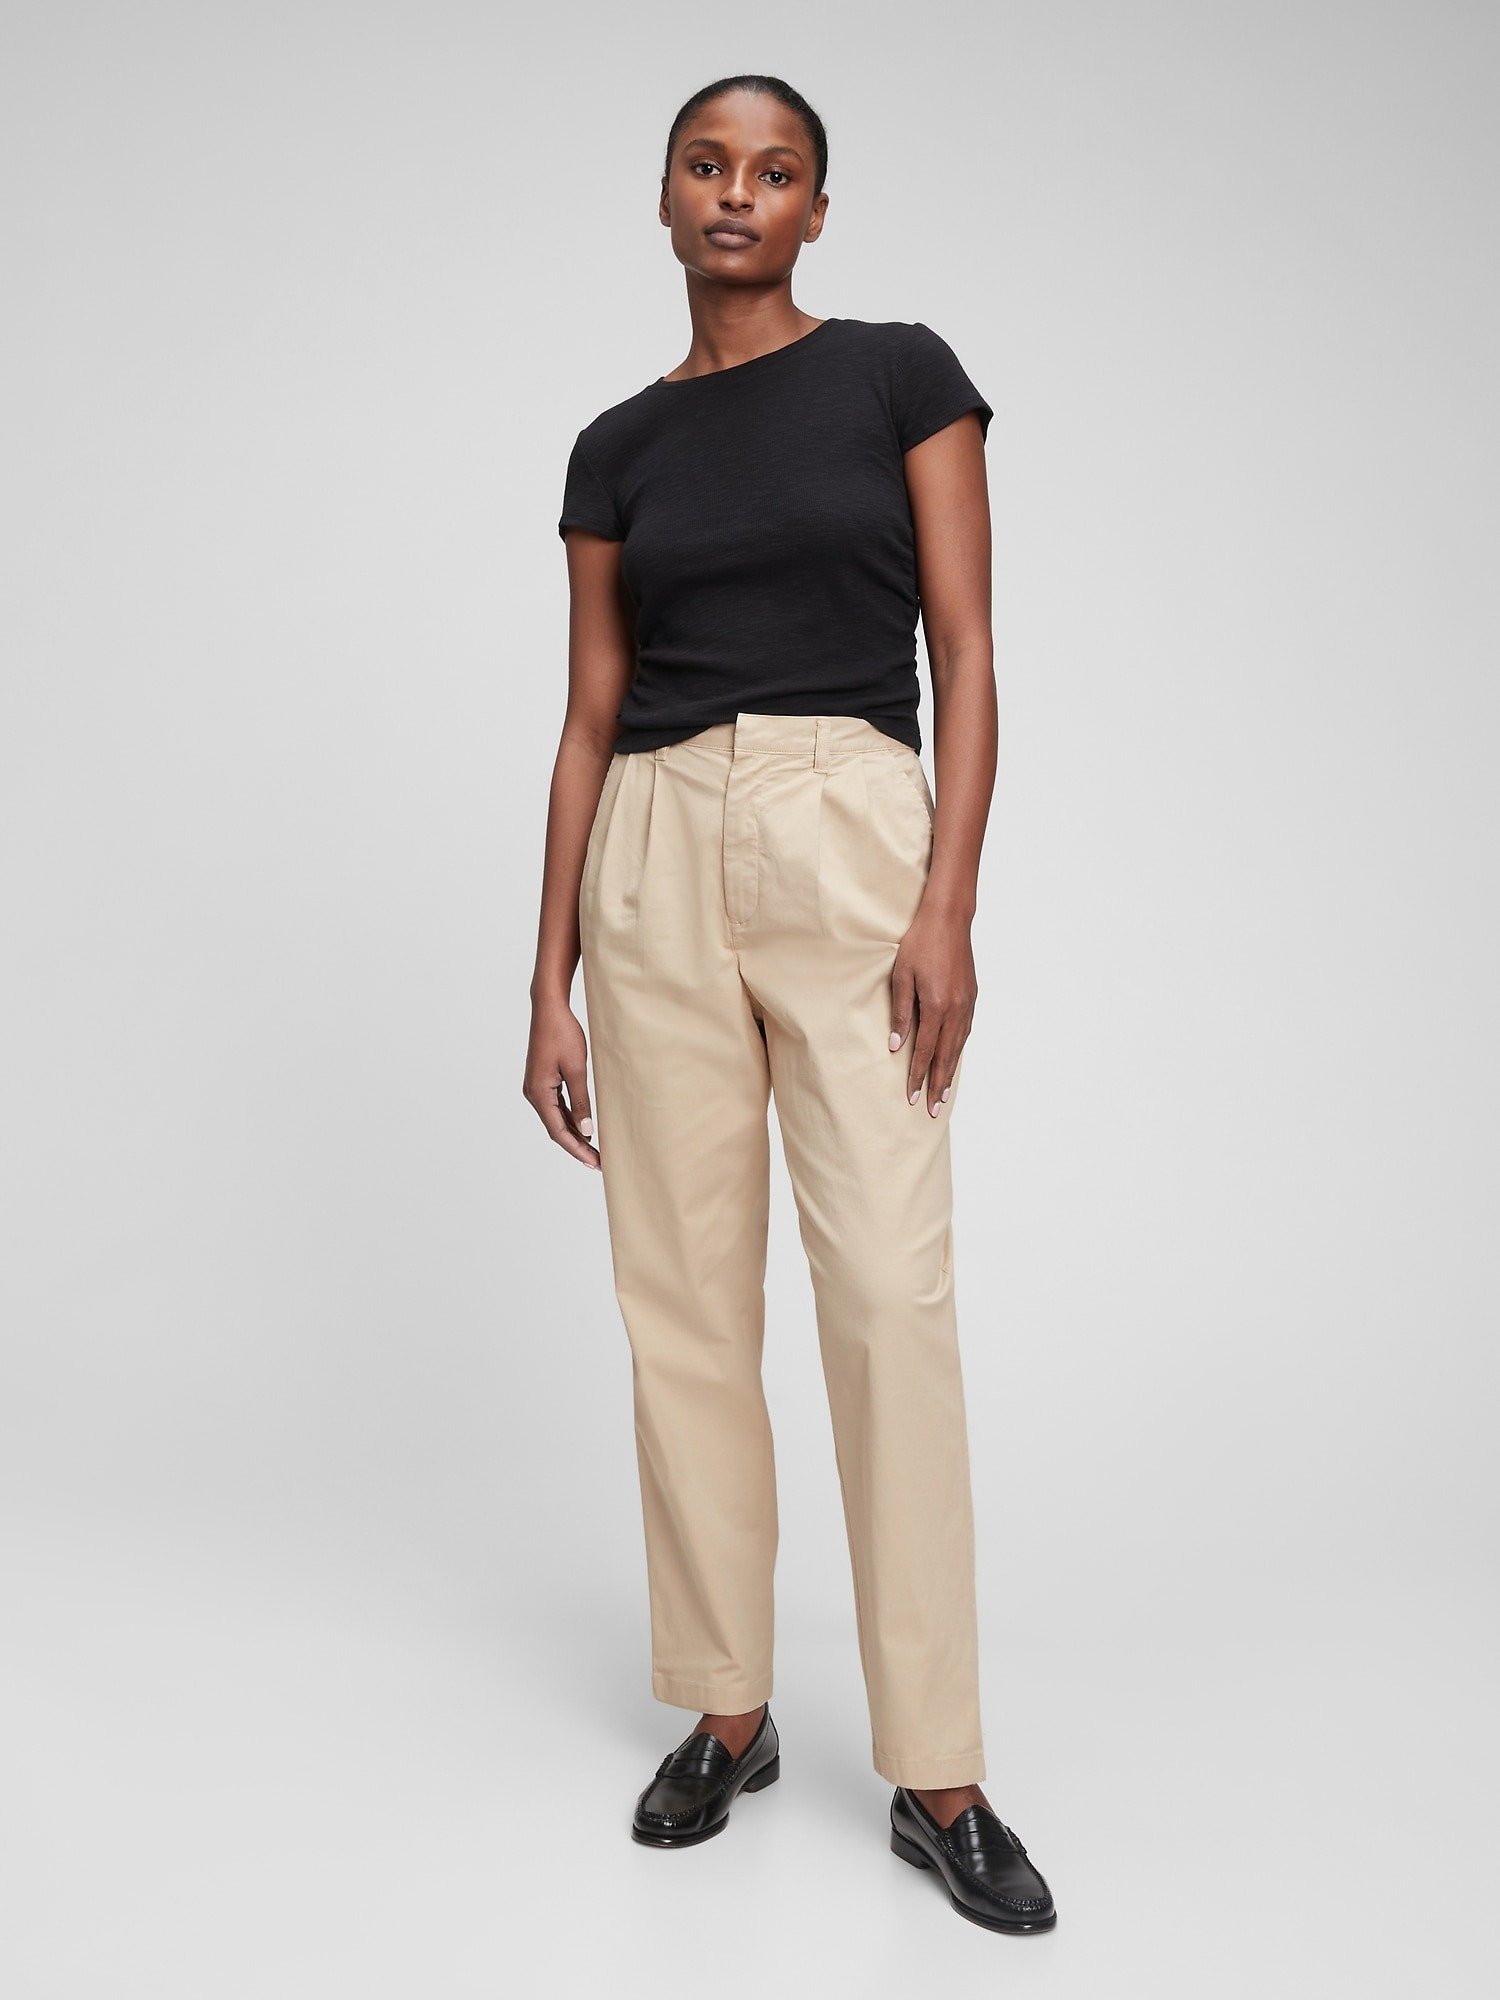 High Rise Pleated Washwell™ Khaki Pantolon product image